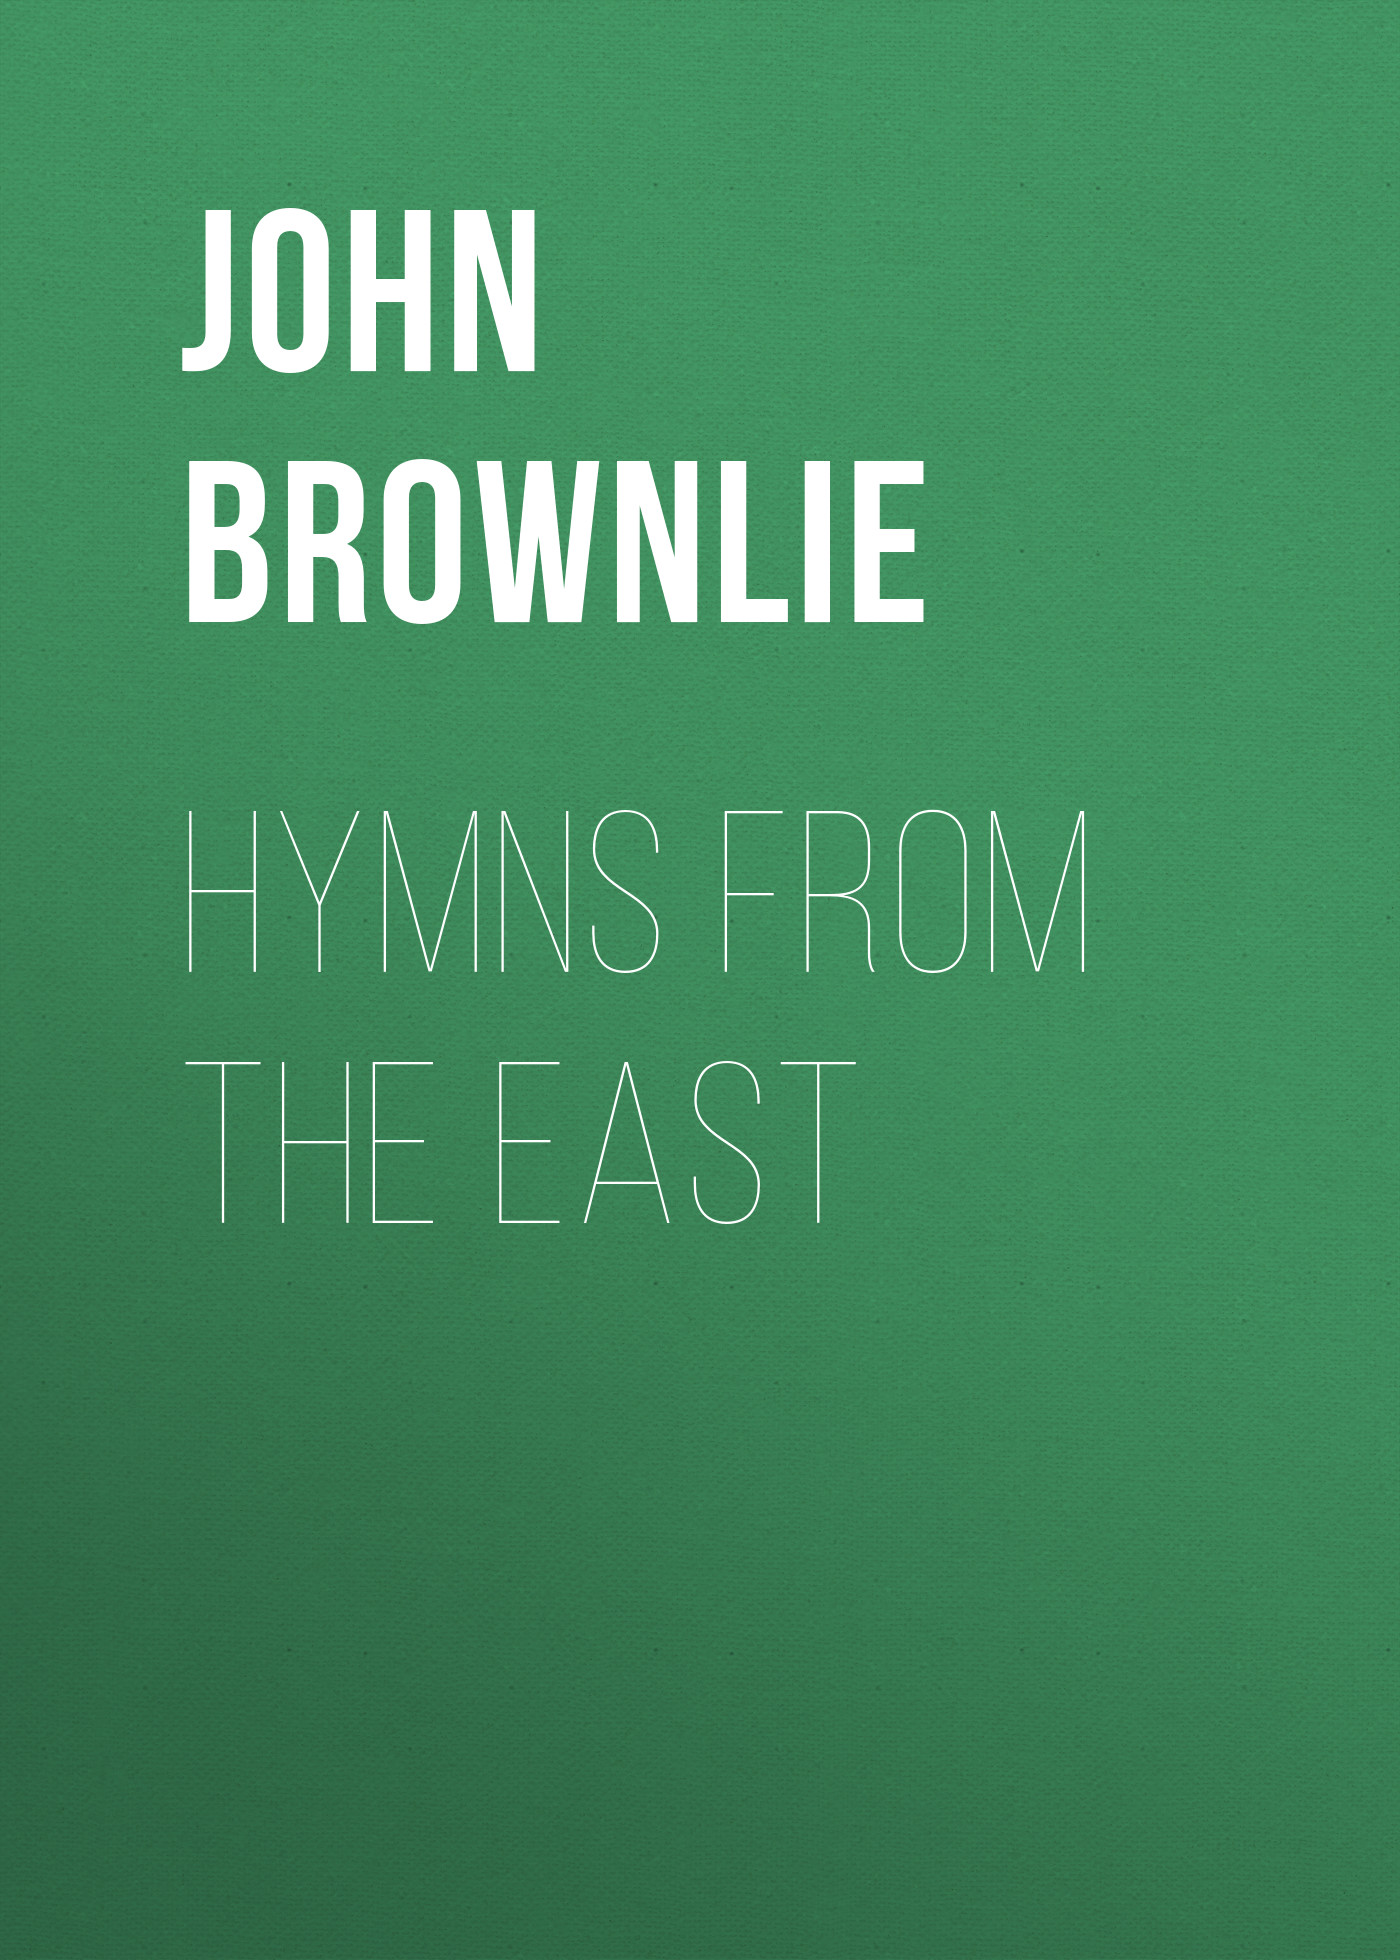 Книга Hymns from the East из серии , созданная John Brownlie, может относится к жанру Зарубежная старинная литература, Зарубежная классика. Стоимость электронной книги Hymns from the East с идентификатором 24171900 составляет 0.90 руб.